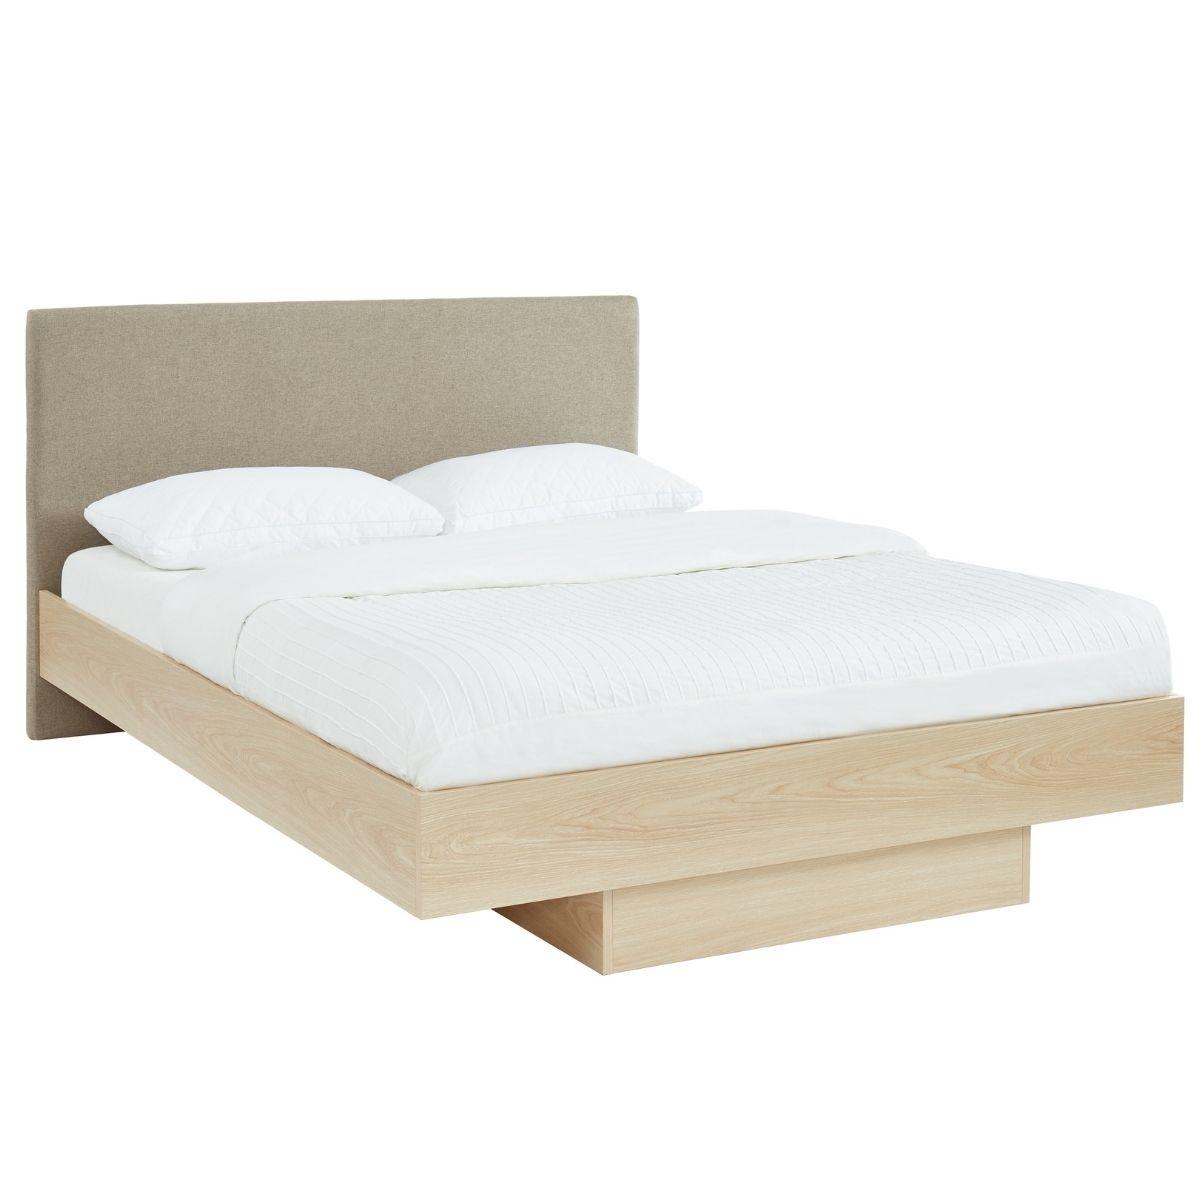 Natural Oak Wood Floating Bed Frame Queen - Evopia